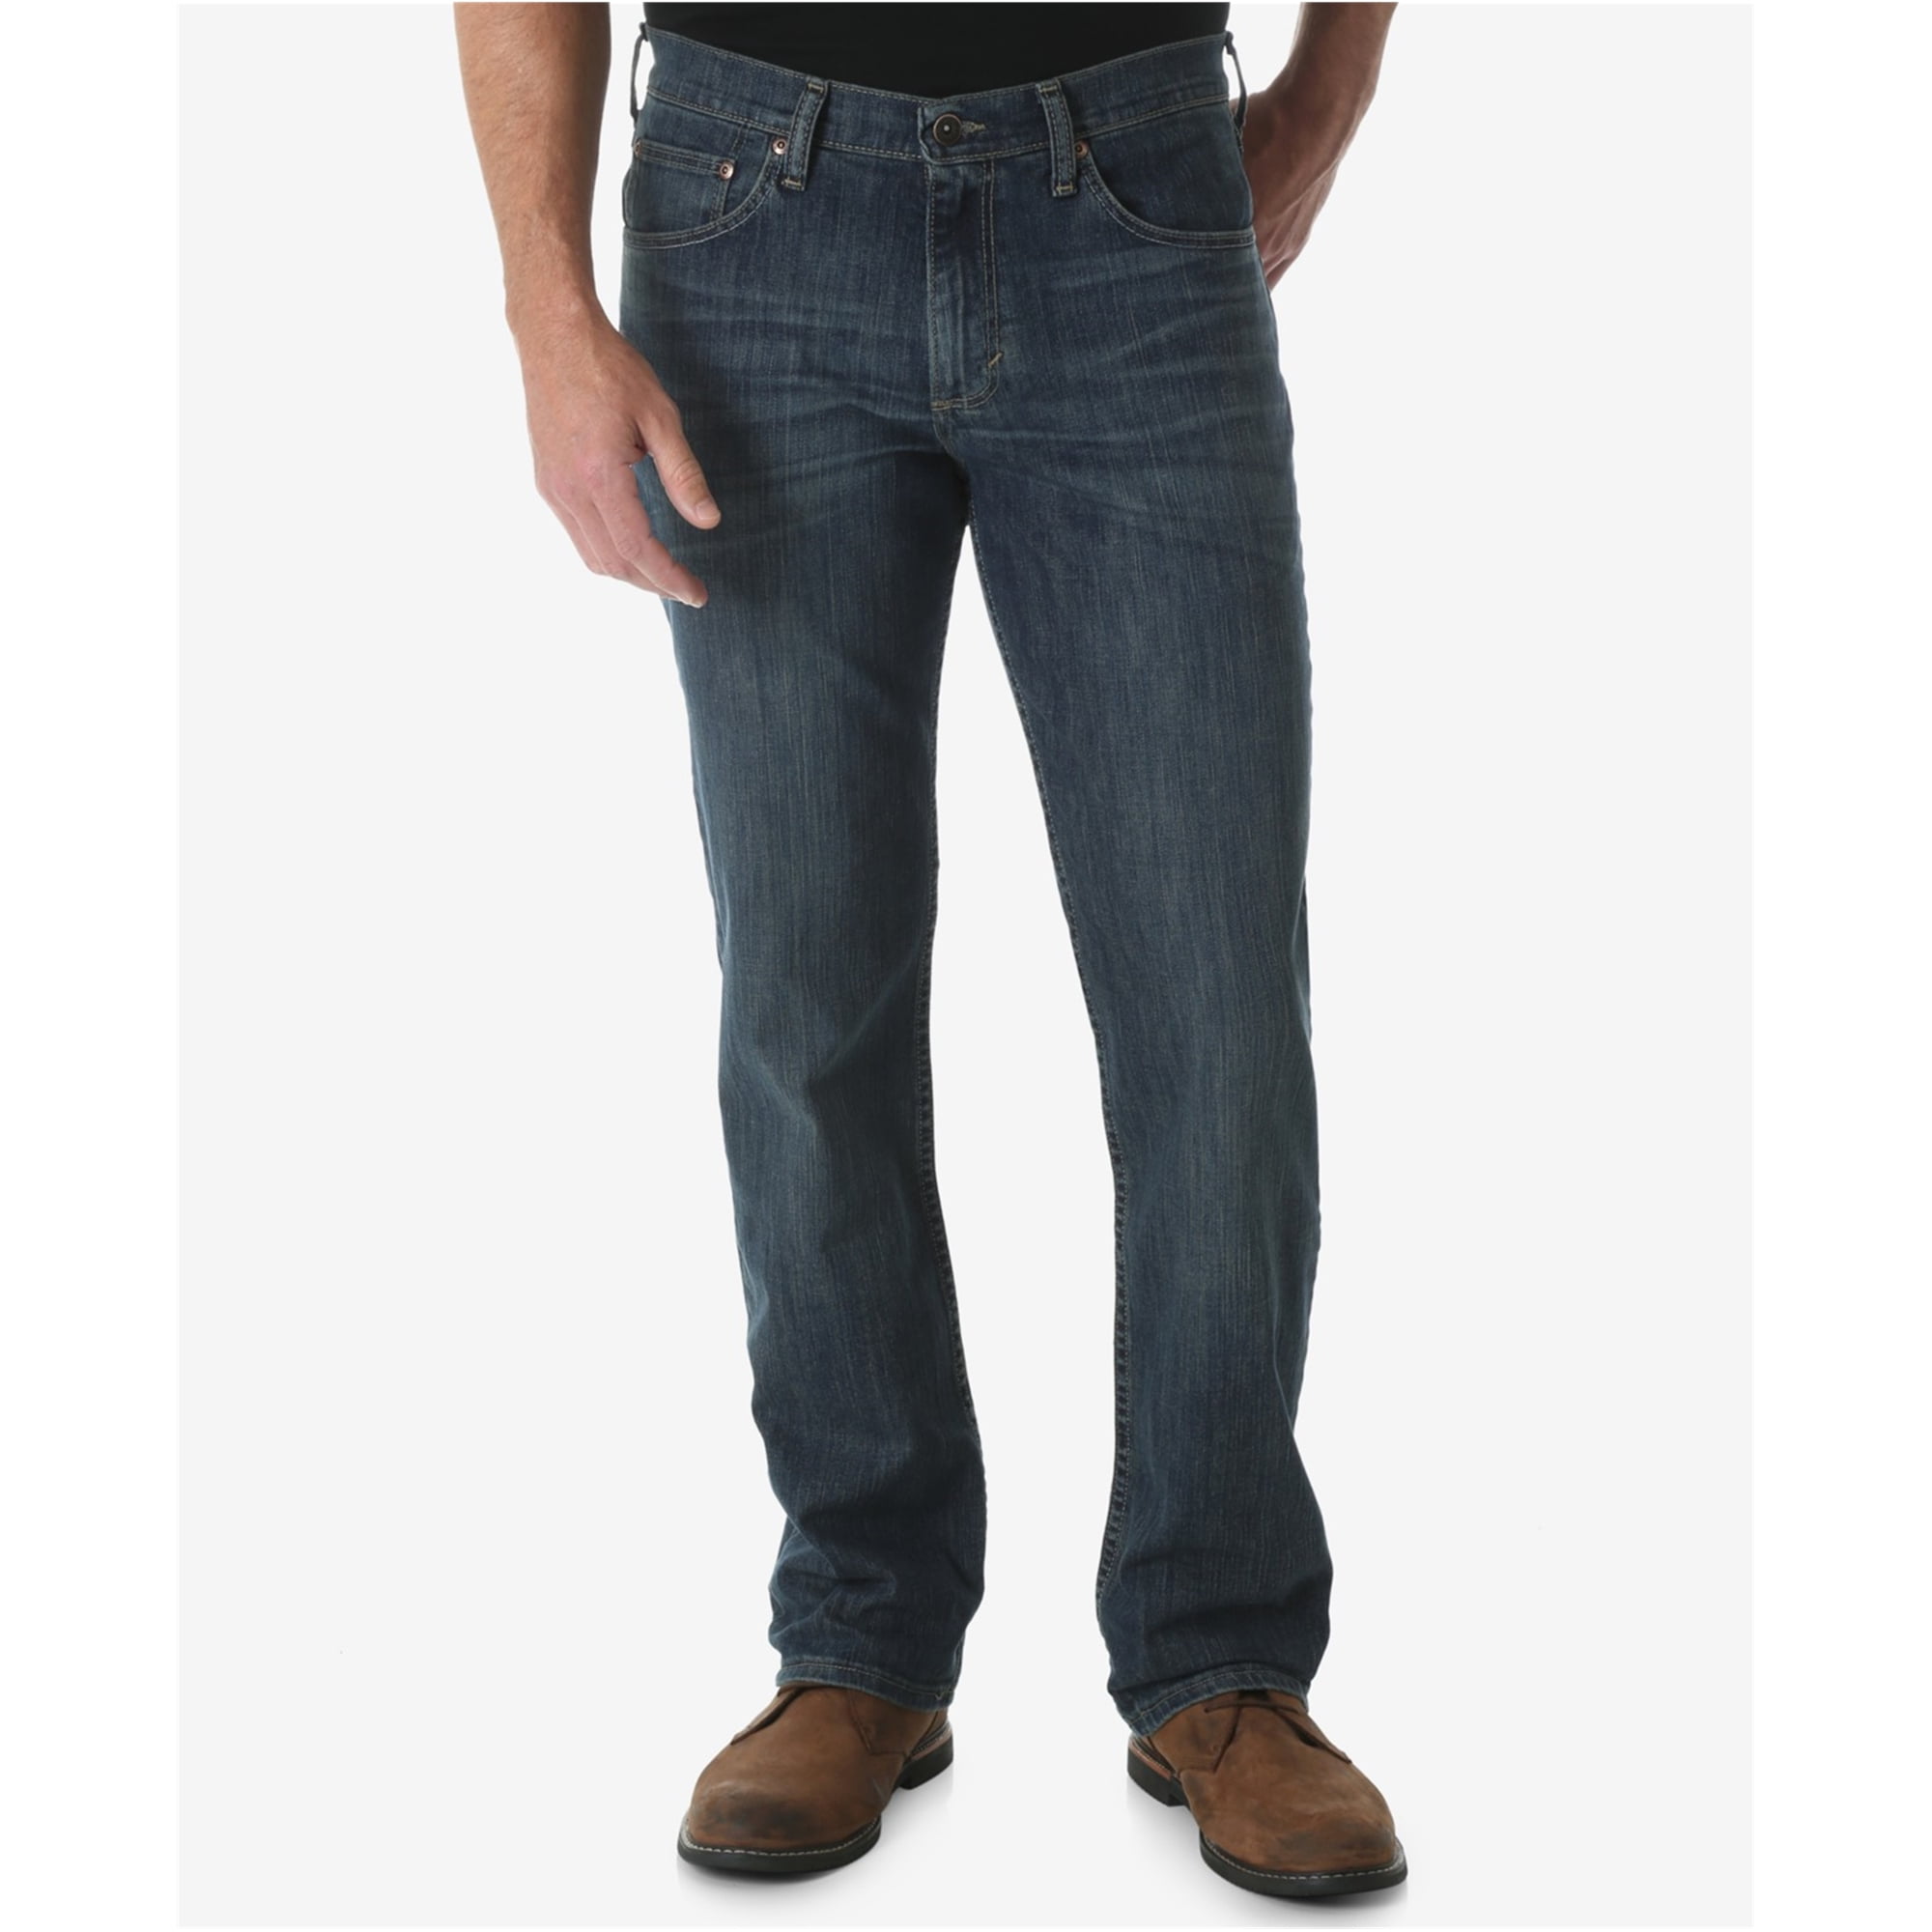 Wrangler - Wrangler Mens Classic Straight Leg Jeans, Blue, 31W x 32L ...